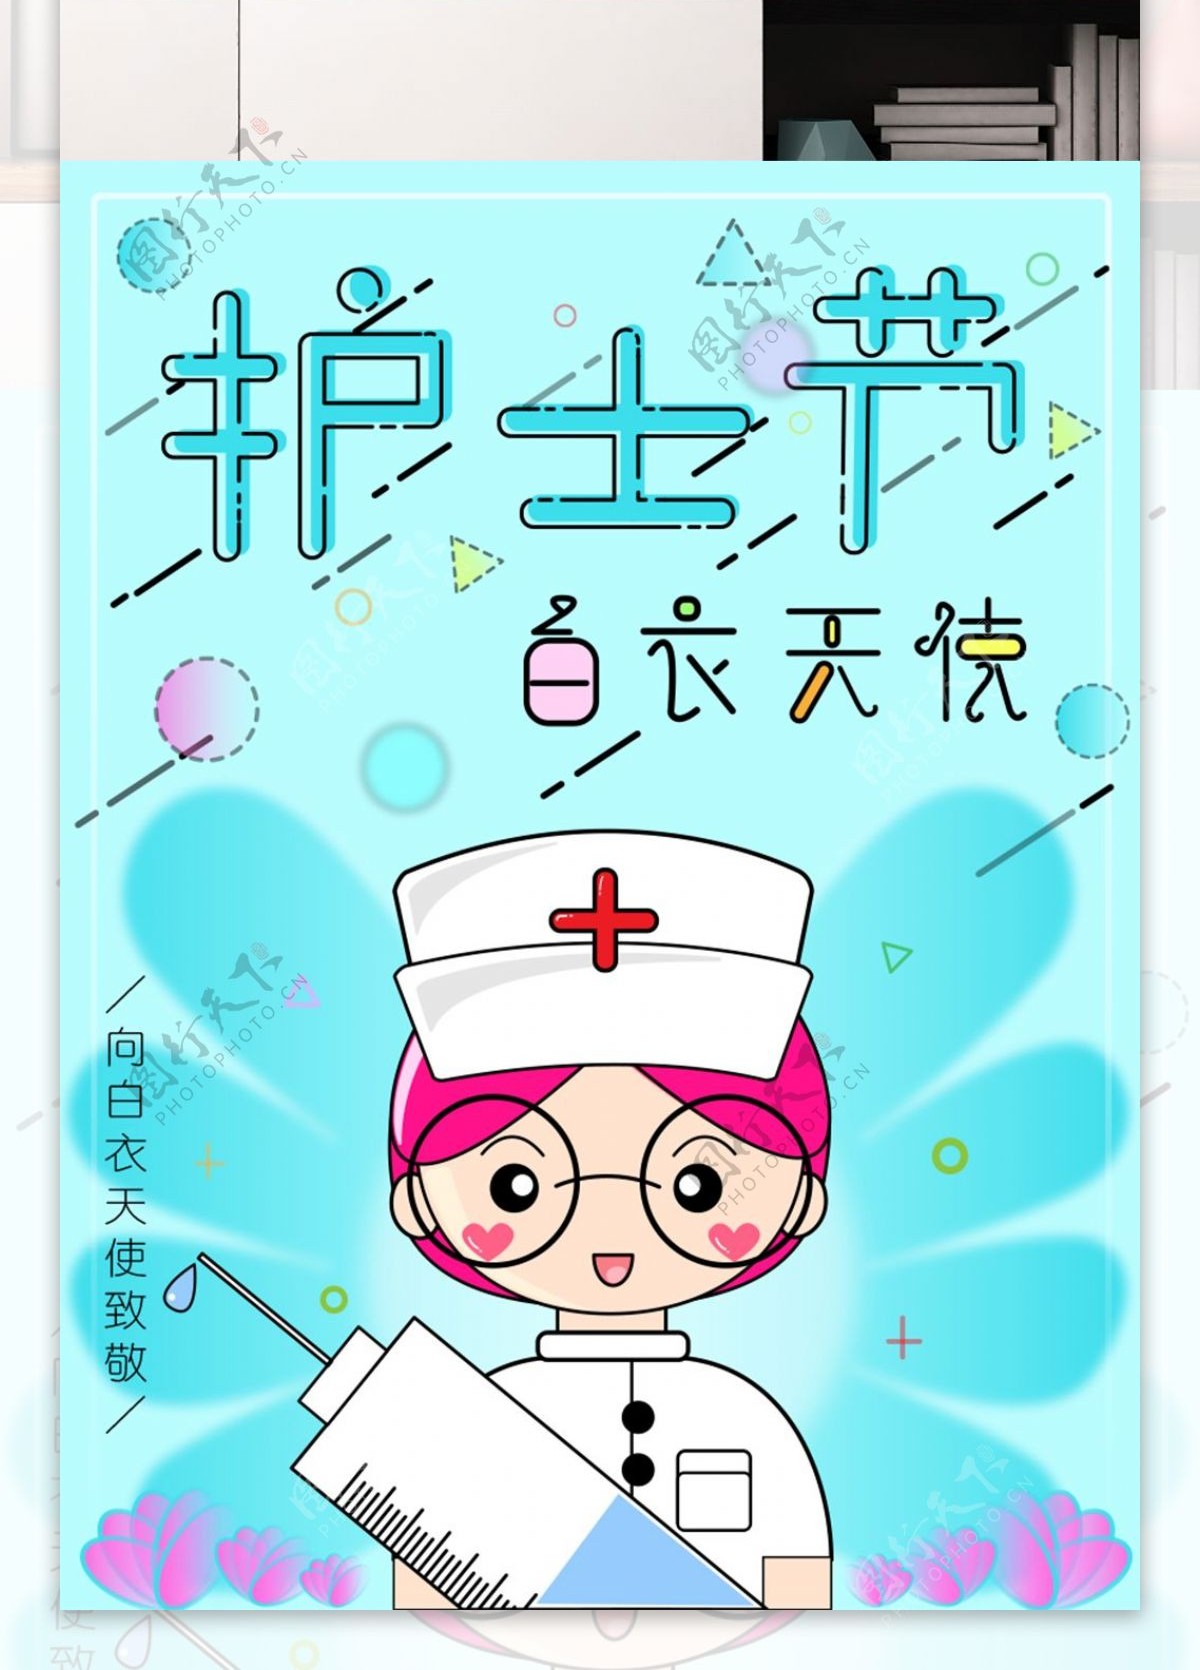 国际护士节白衣天使MBE插画风公益海报